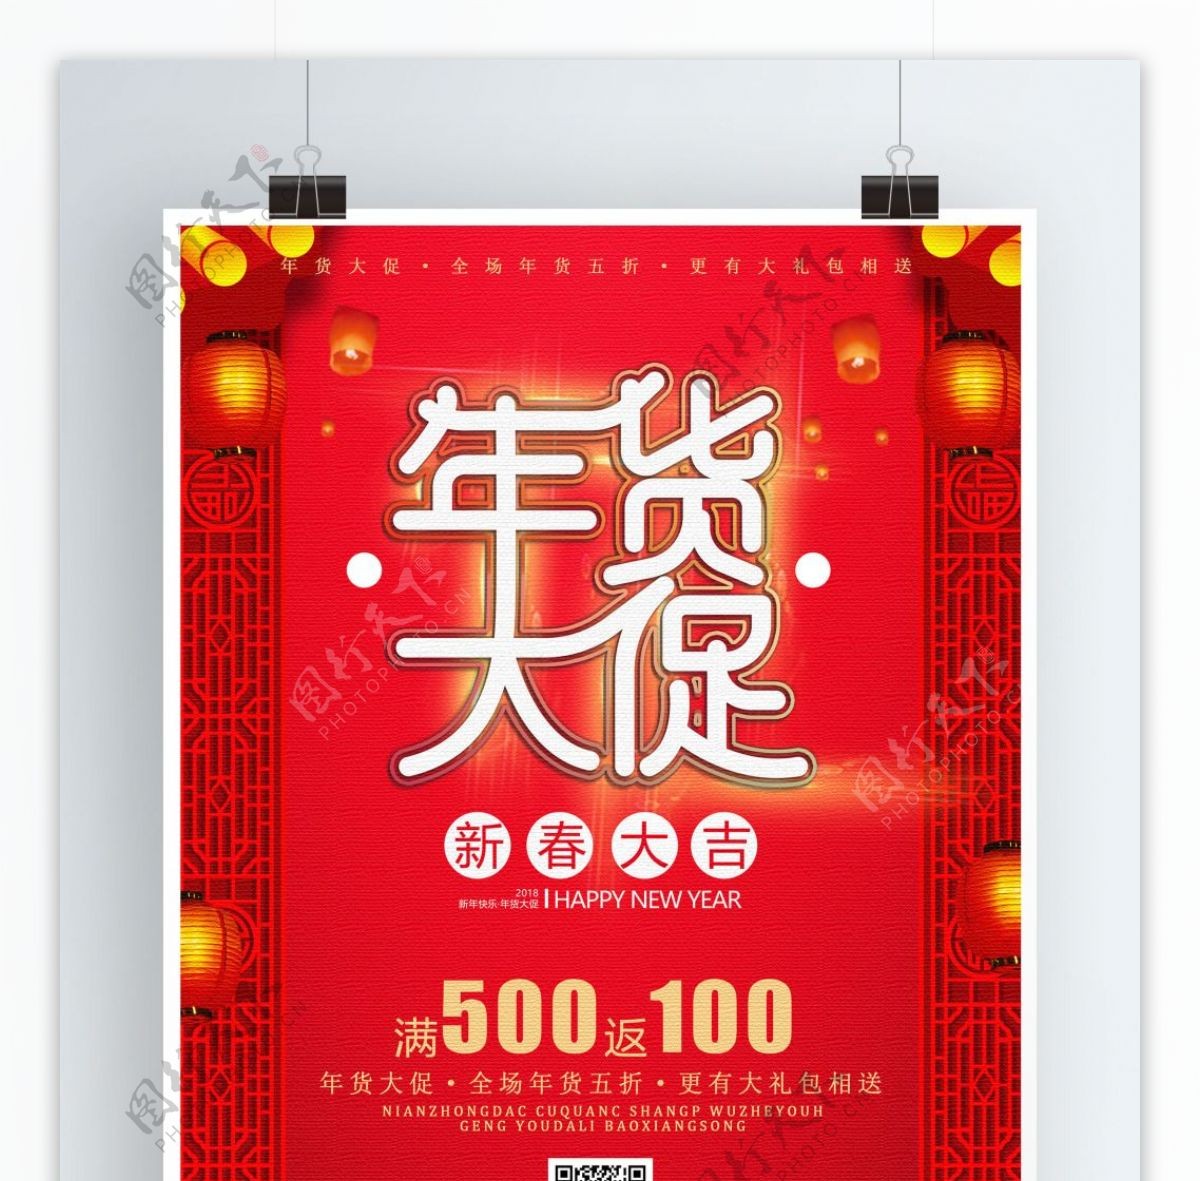 红色喜庆年货大促海报设计